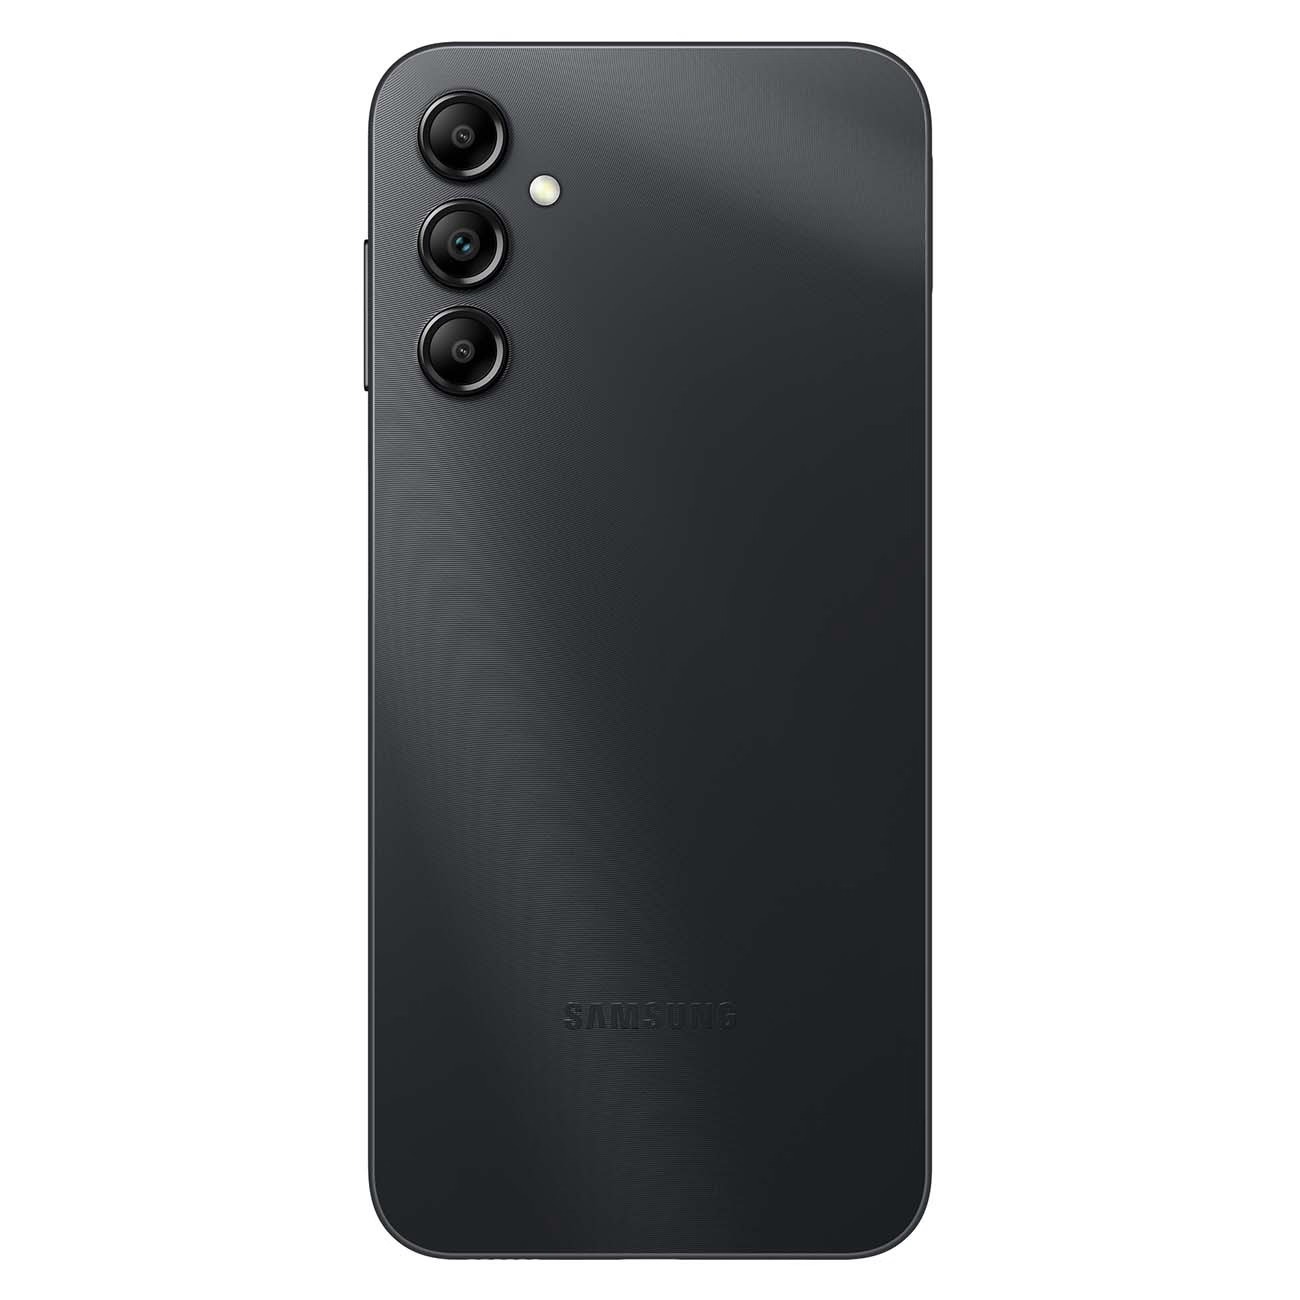 Купить смартфон samsung galaxy a14 4/64gb black A-Серия в официальном магазине Apple, Samsung, Xiaomi. iPixel.ru Купить, заказ, кредит, рассрочка, отзывы,  характеристики, цена,  фотографии, в подарок.